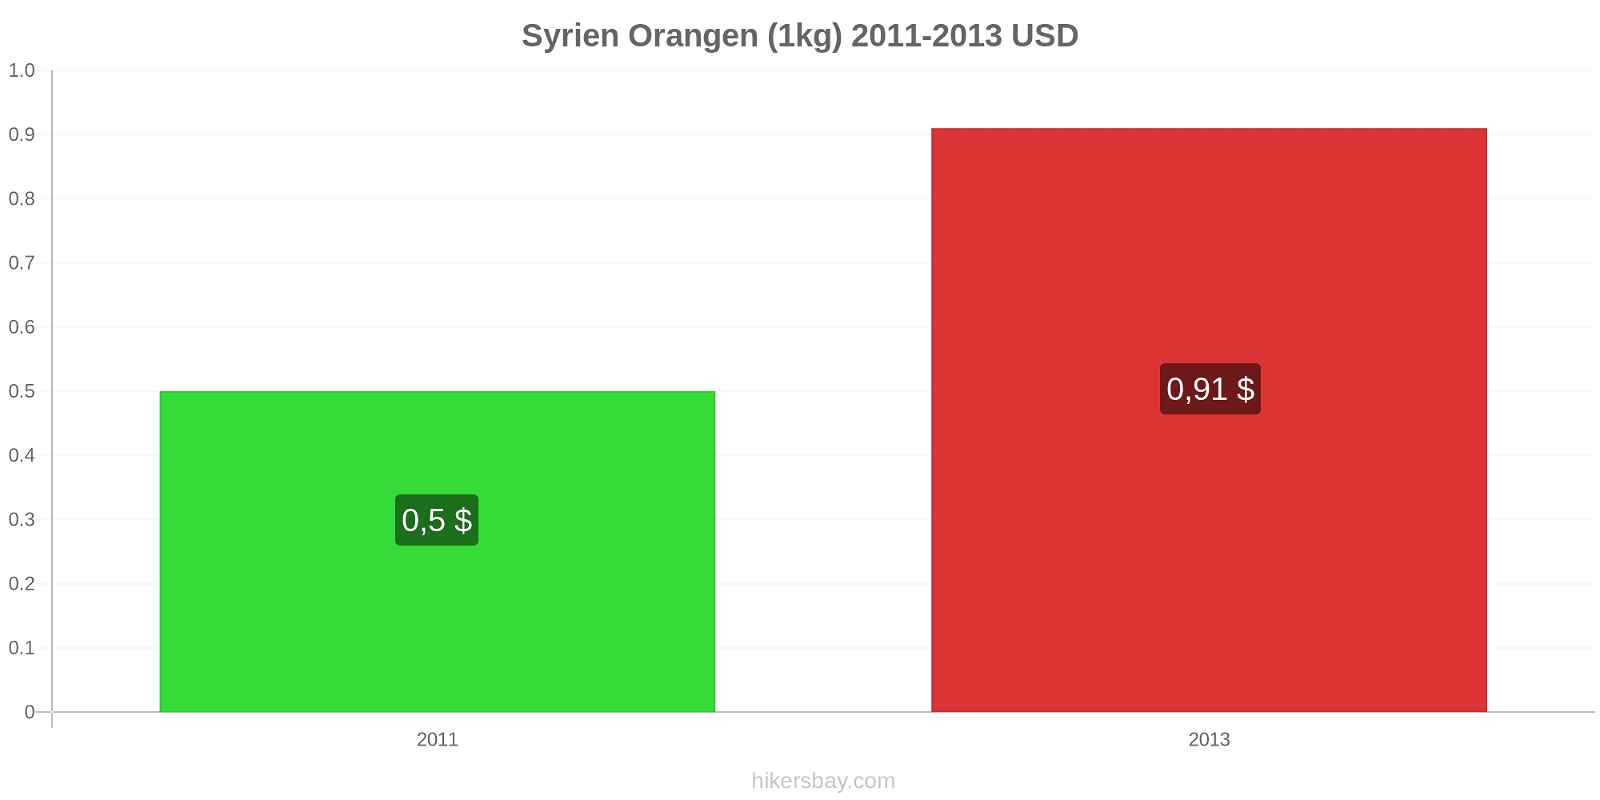 Syrien Preisänderungen Orangen (1kg) hikersbay.com